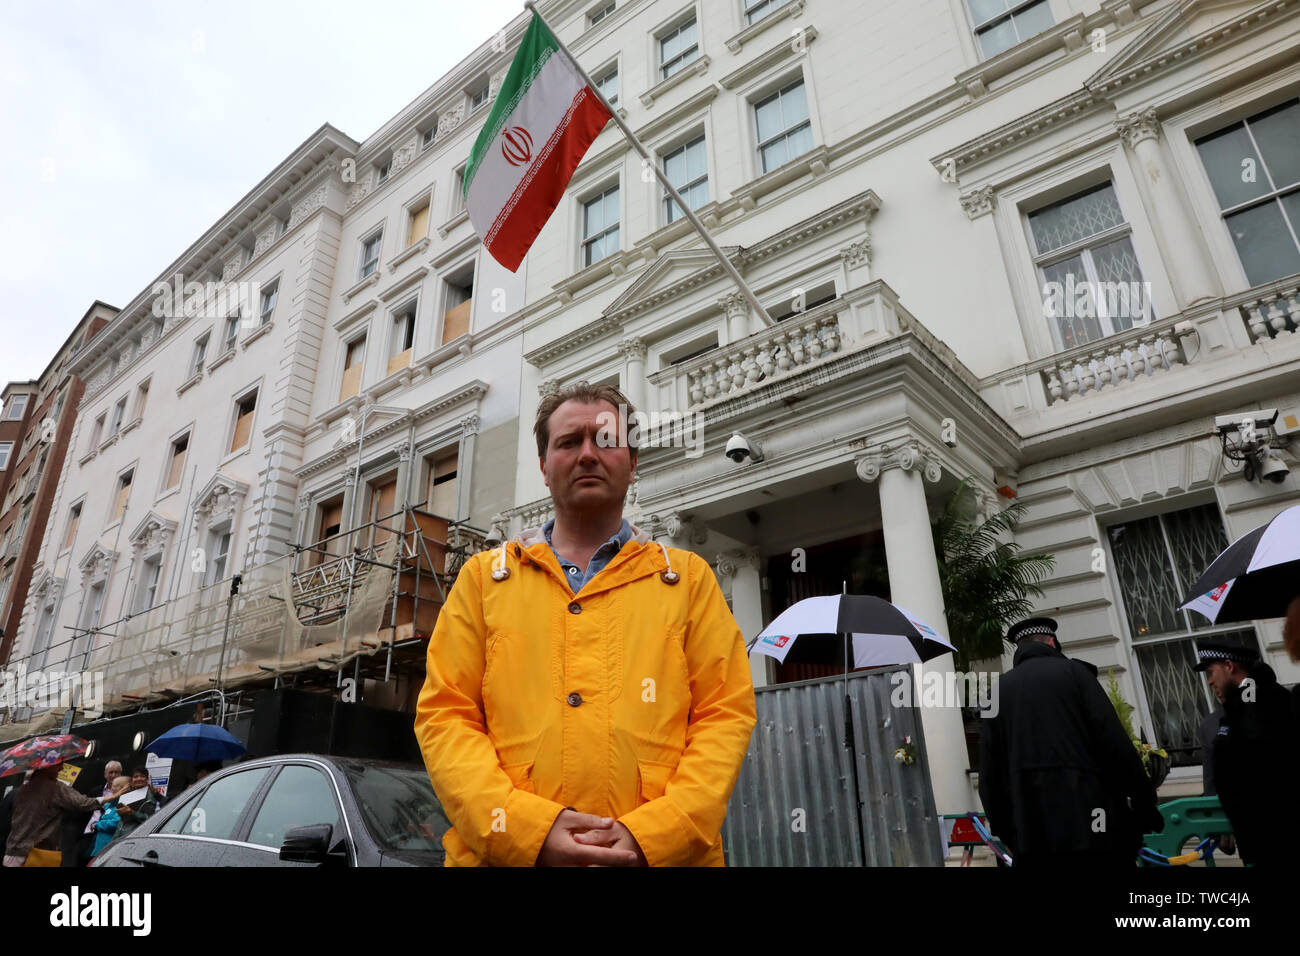 London / UK - Giugno 19, 2019: Richard Ratcliffe al di fuori dell'ambasciata iraniana a Londra dove si è messa in scena uno sciopero della fame a sostegno di sua moglie Nazanin Zaghari-Ratcliffe, incarcerati in Iran Foto Stock